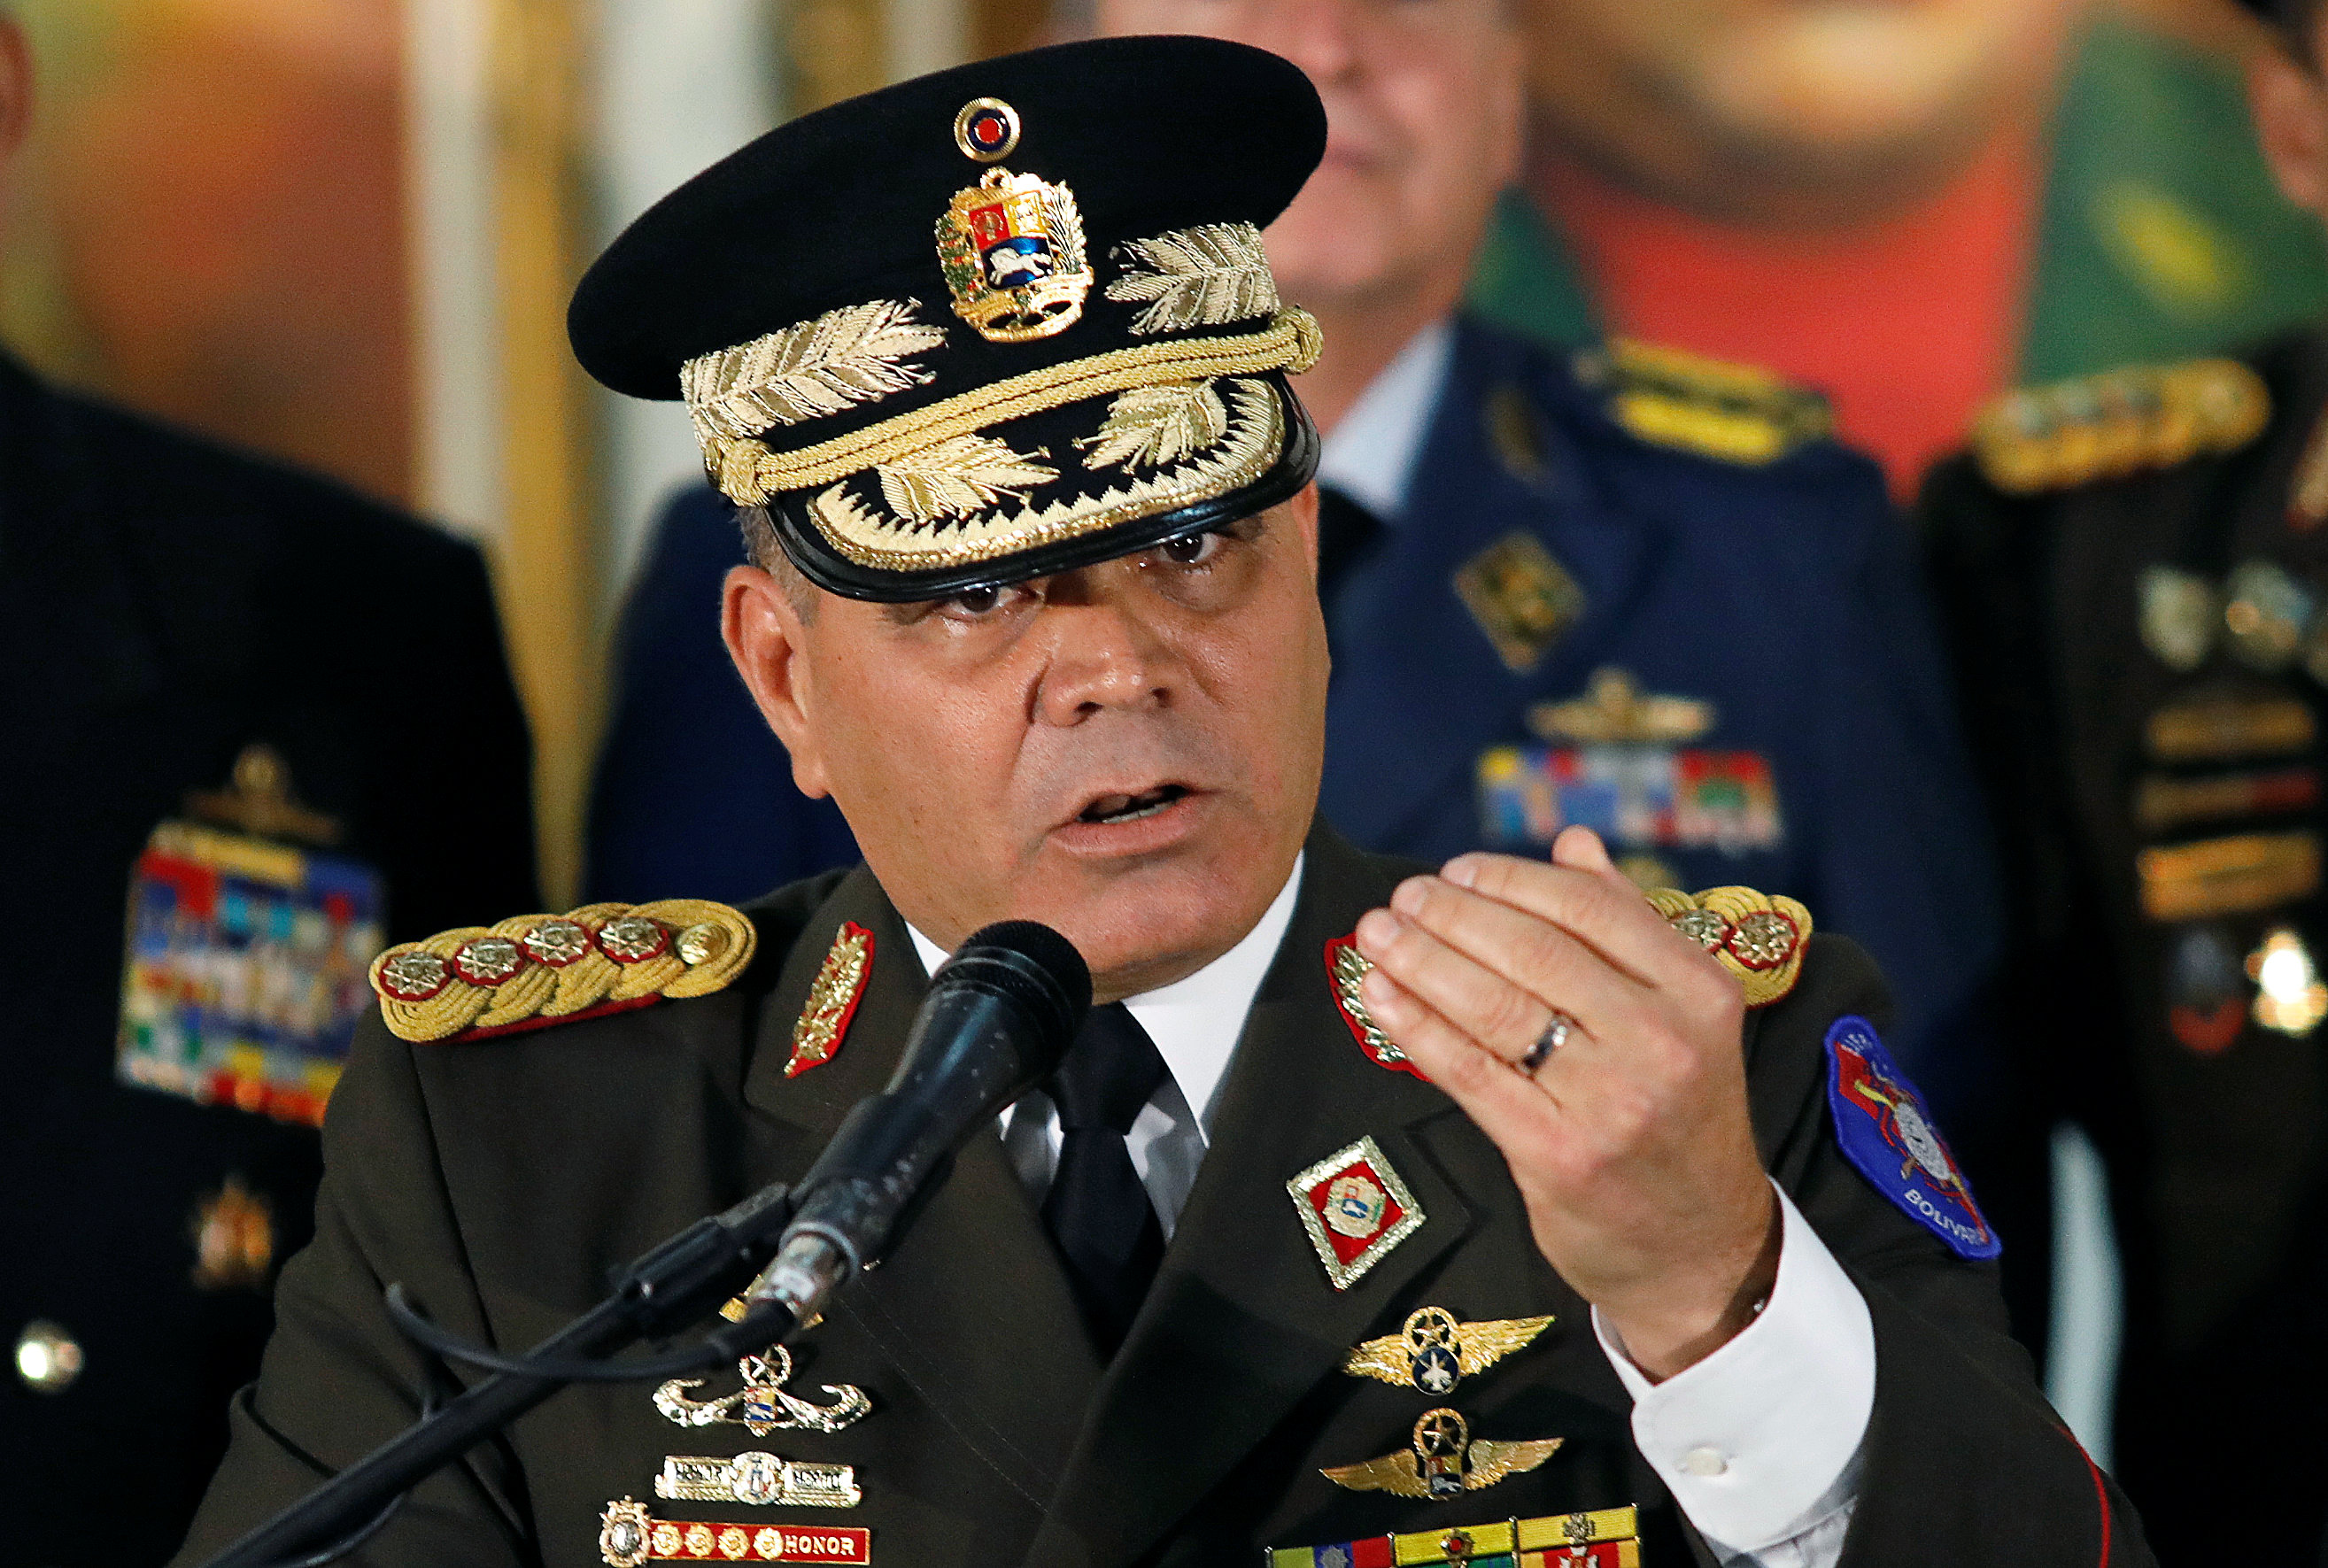 Padrino López alerta al pueblo de Venezuela “que se está llevando a cabo un golpe de Estado”